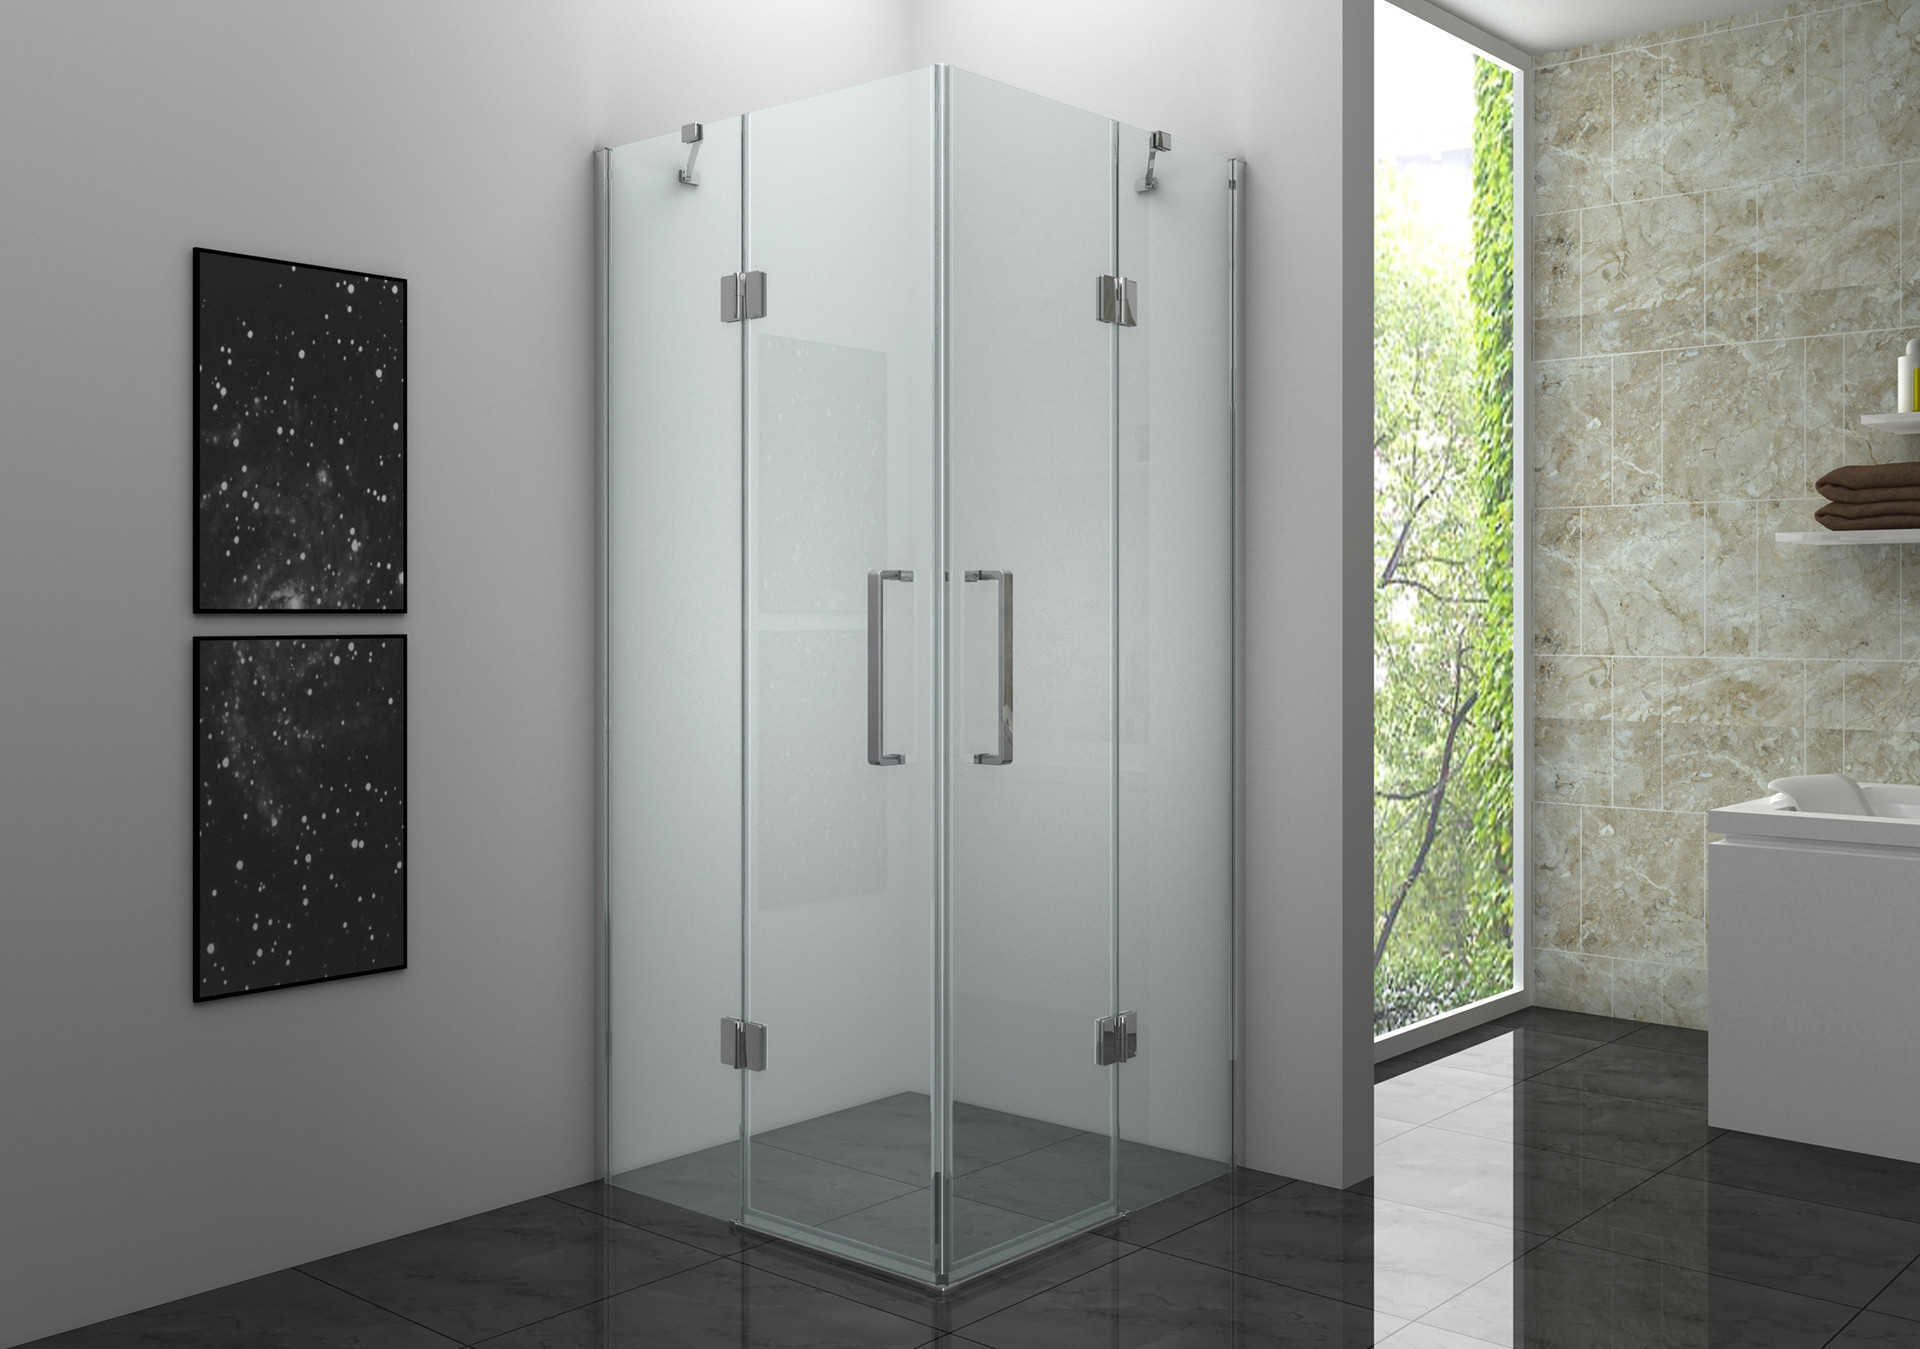  Corner Square Folding Door Shower Enclosure: Maximizing Space in Your Bathroom